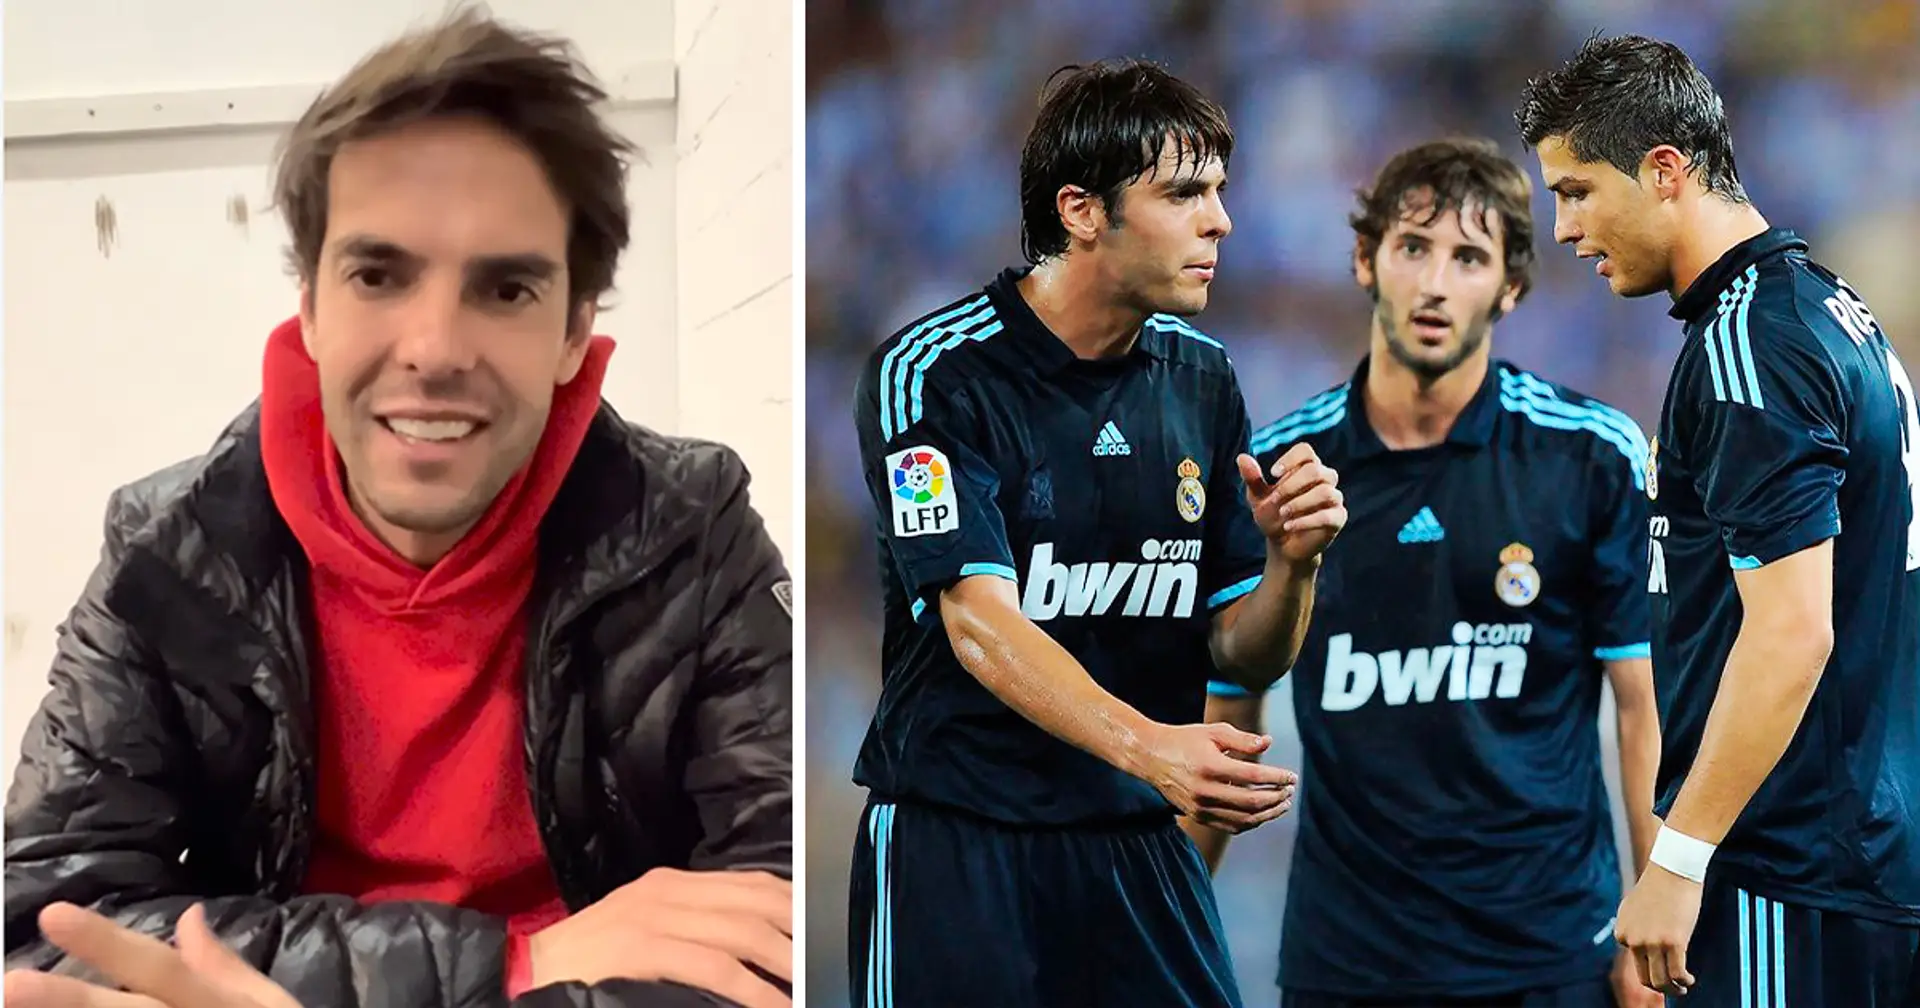 "Ich musste mein Spiel ändern": Kaka spricht über seine Zeit bei Real Madrid